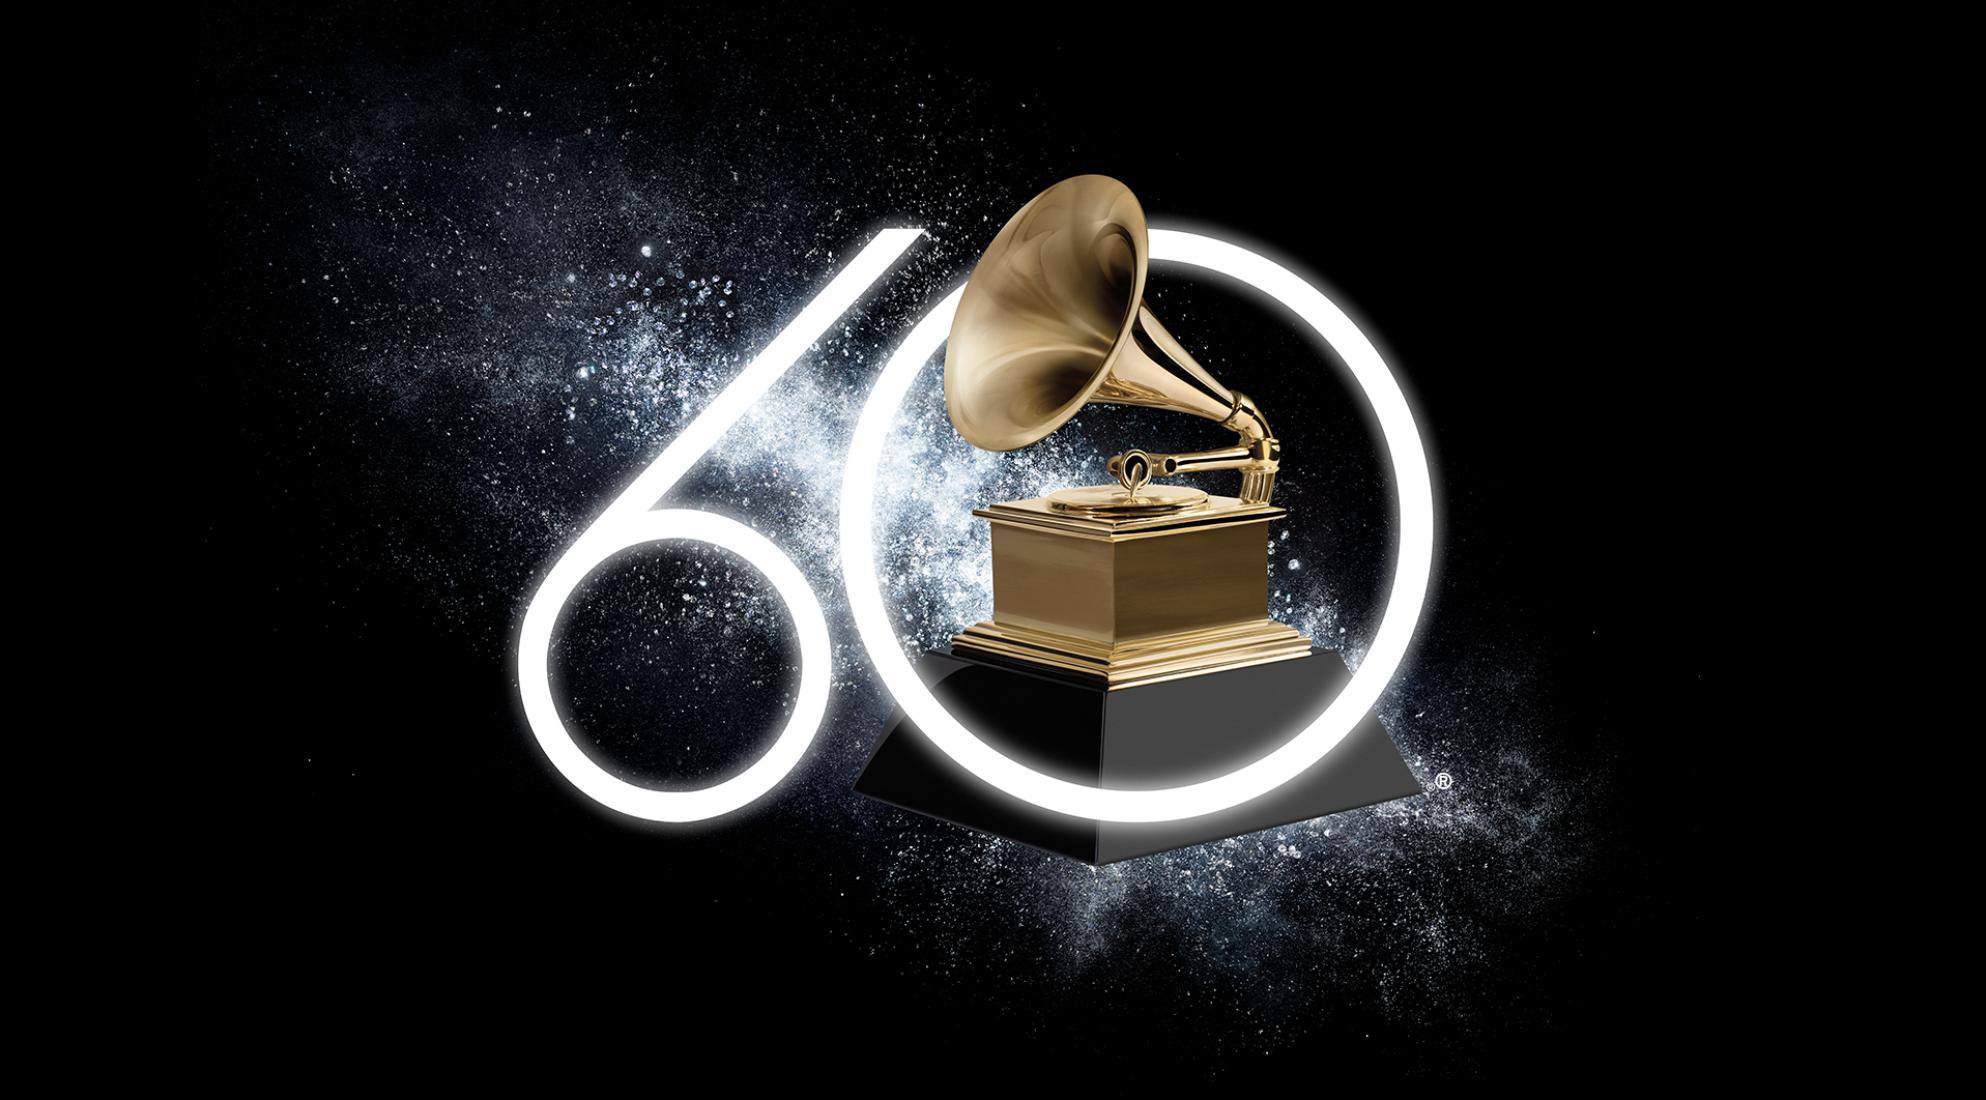 Grammy Award Nomination